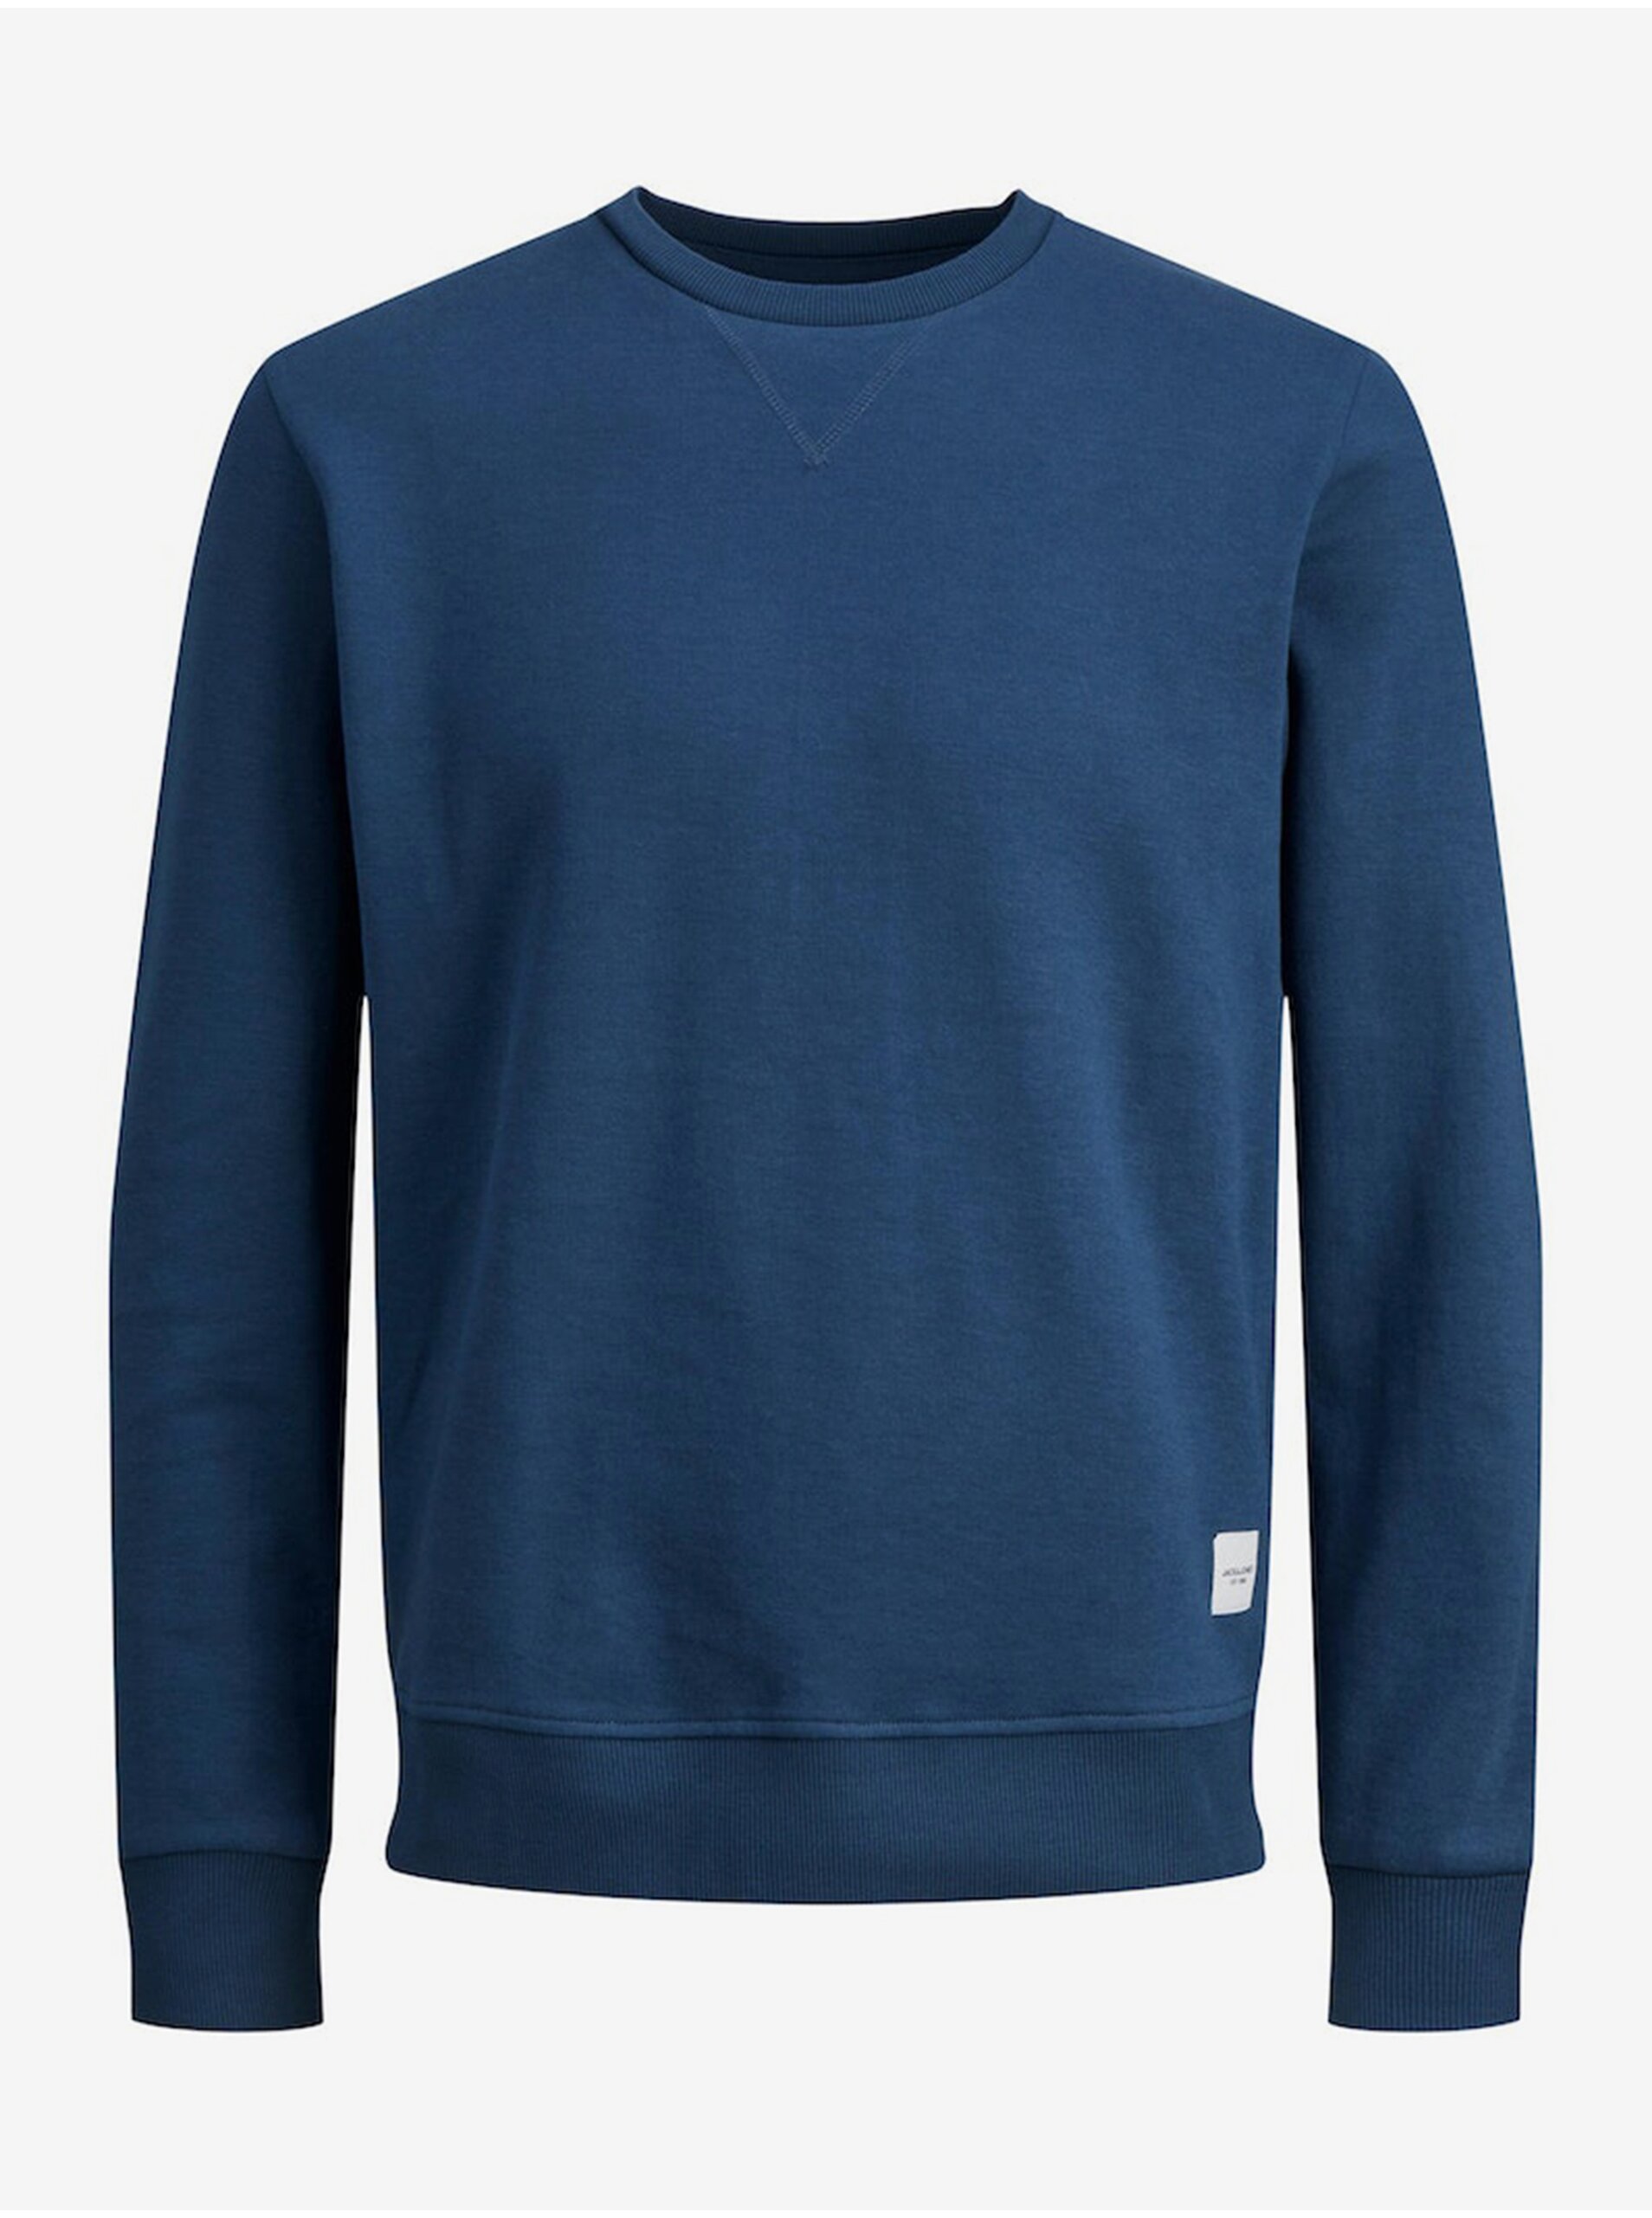 Men's Blue Sweatshirt Jack & Jones Basic - Men